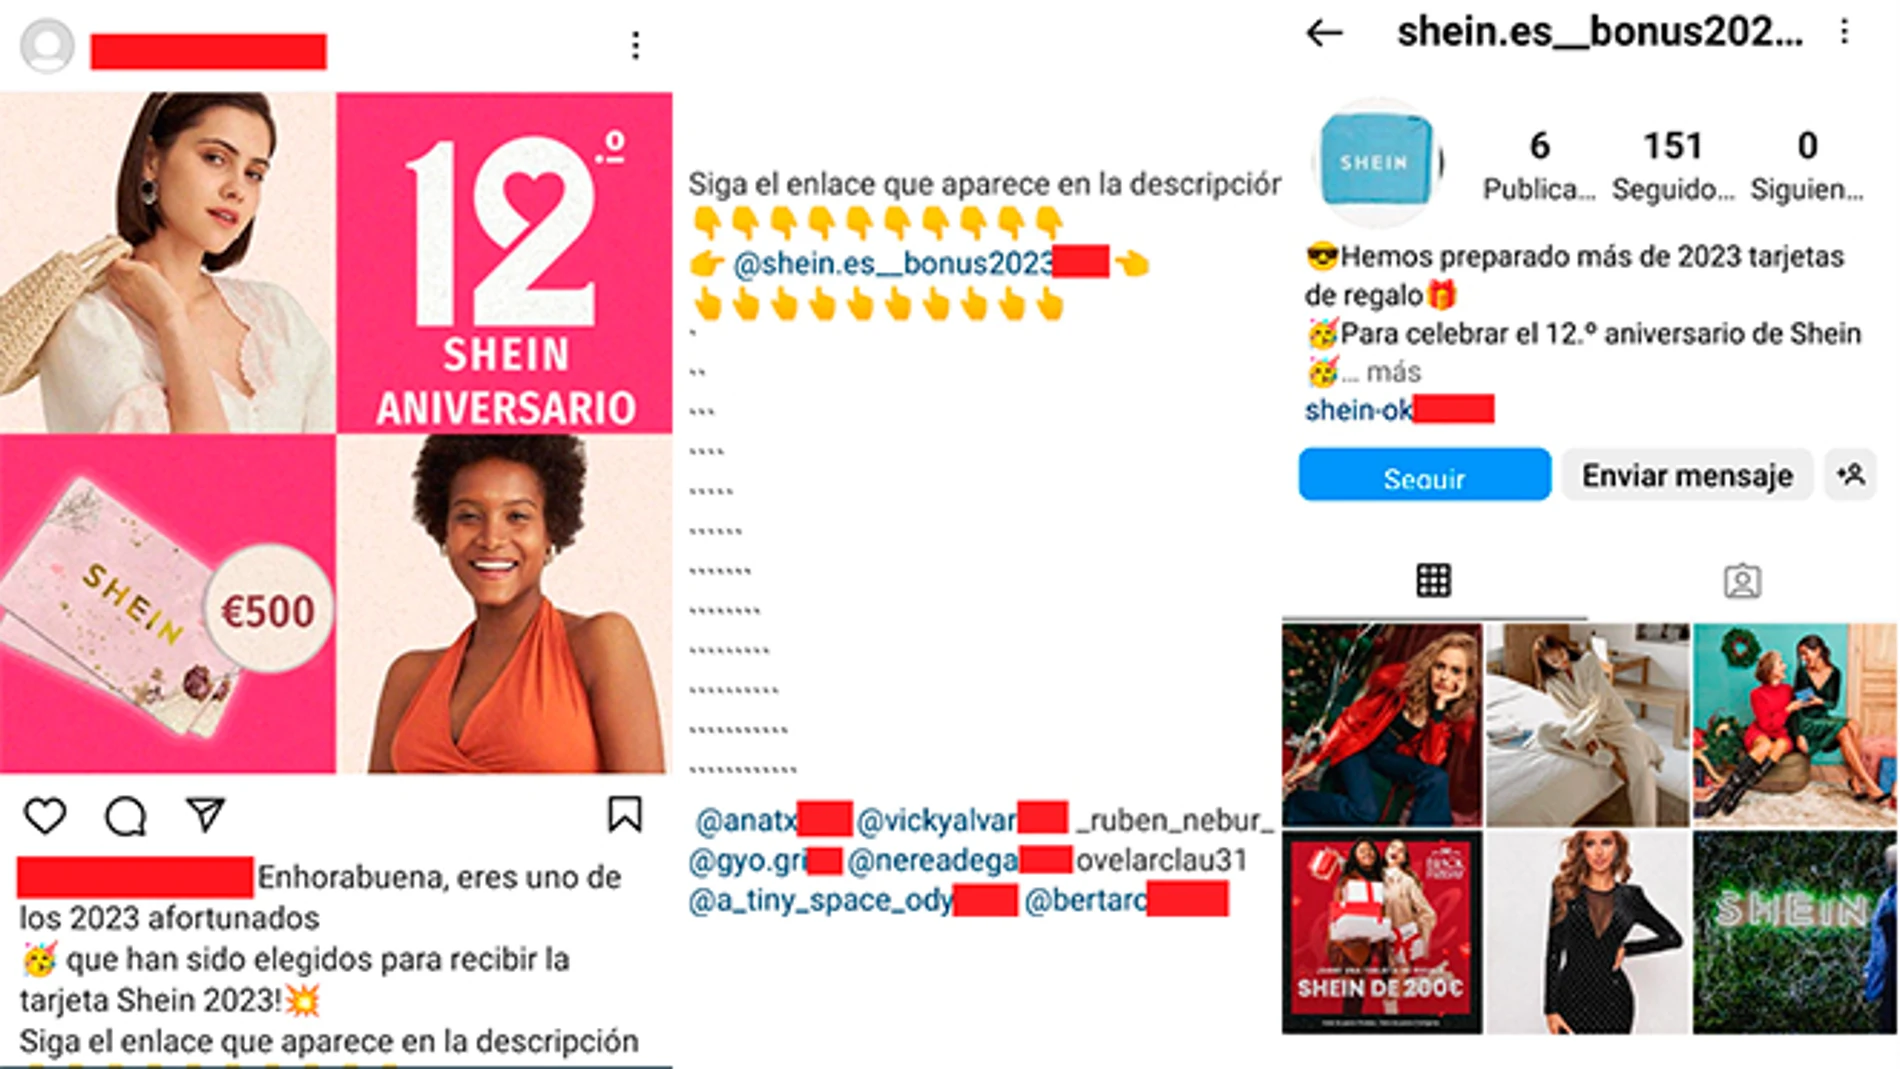 Estafa en Instagram: falsas tarjetas de regalo de Shein para suscribirte a servicios sin tu consentimiento.